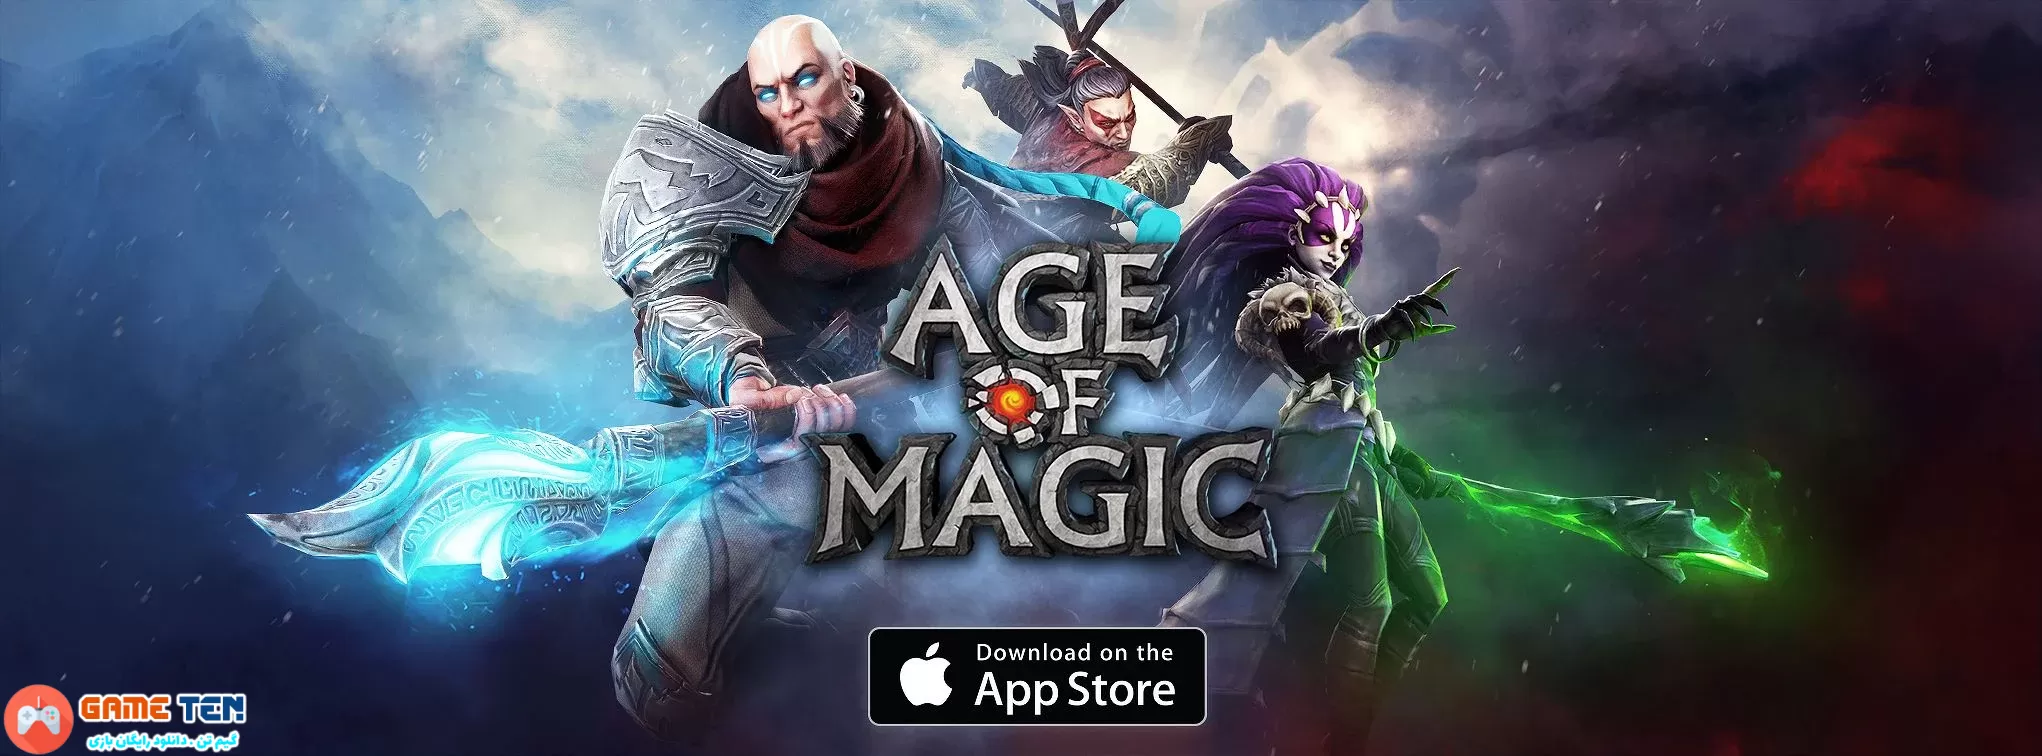 دانلود مود Age of Magic - بازی نقش آفرینی عصر جادو اندروید